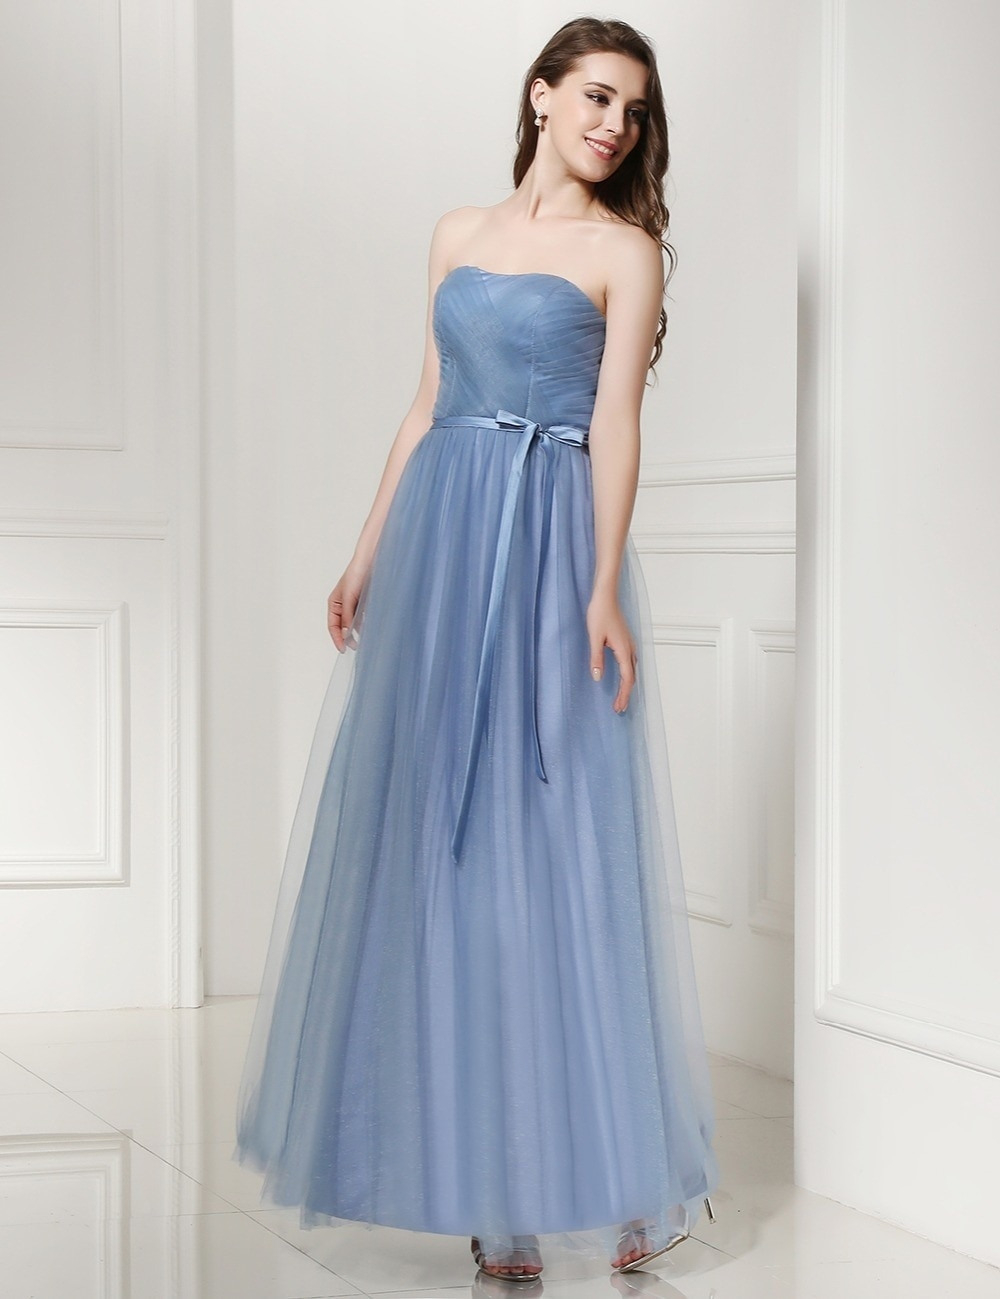 Kleid Gast Hochzeit Blau Archives - Abendkleid - Abendkleid